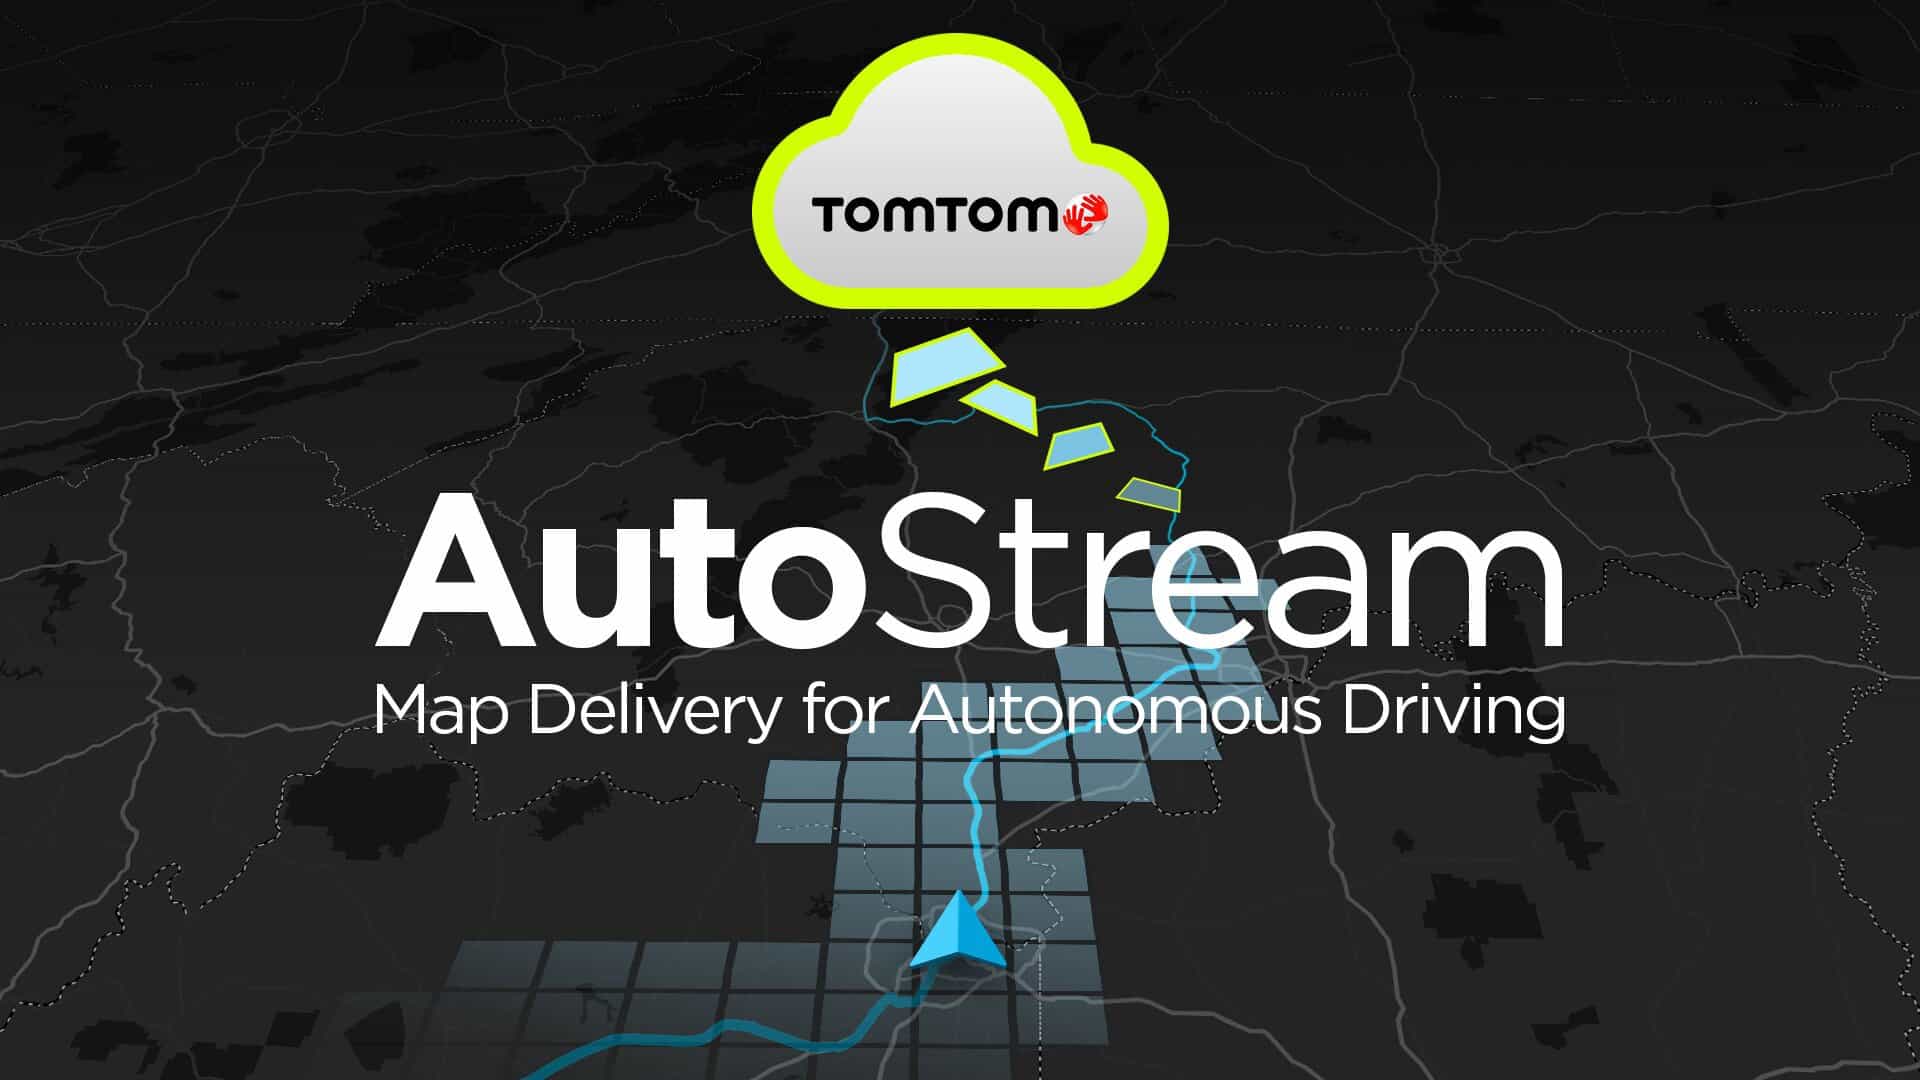 Tomtom annonce un partenariat avec Denso pour introduire un système de navigation en temps réel pour les véhicules autonome